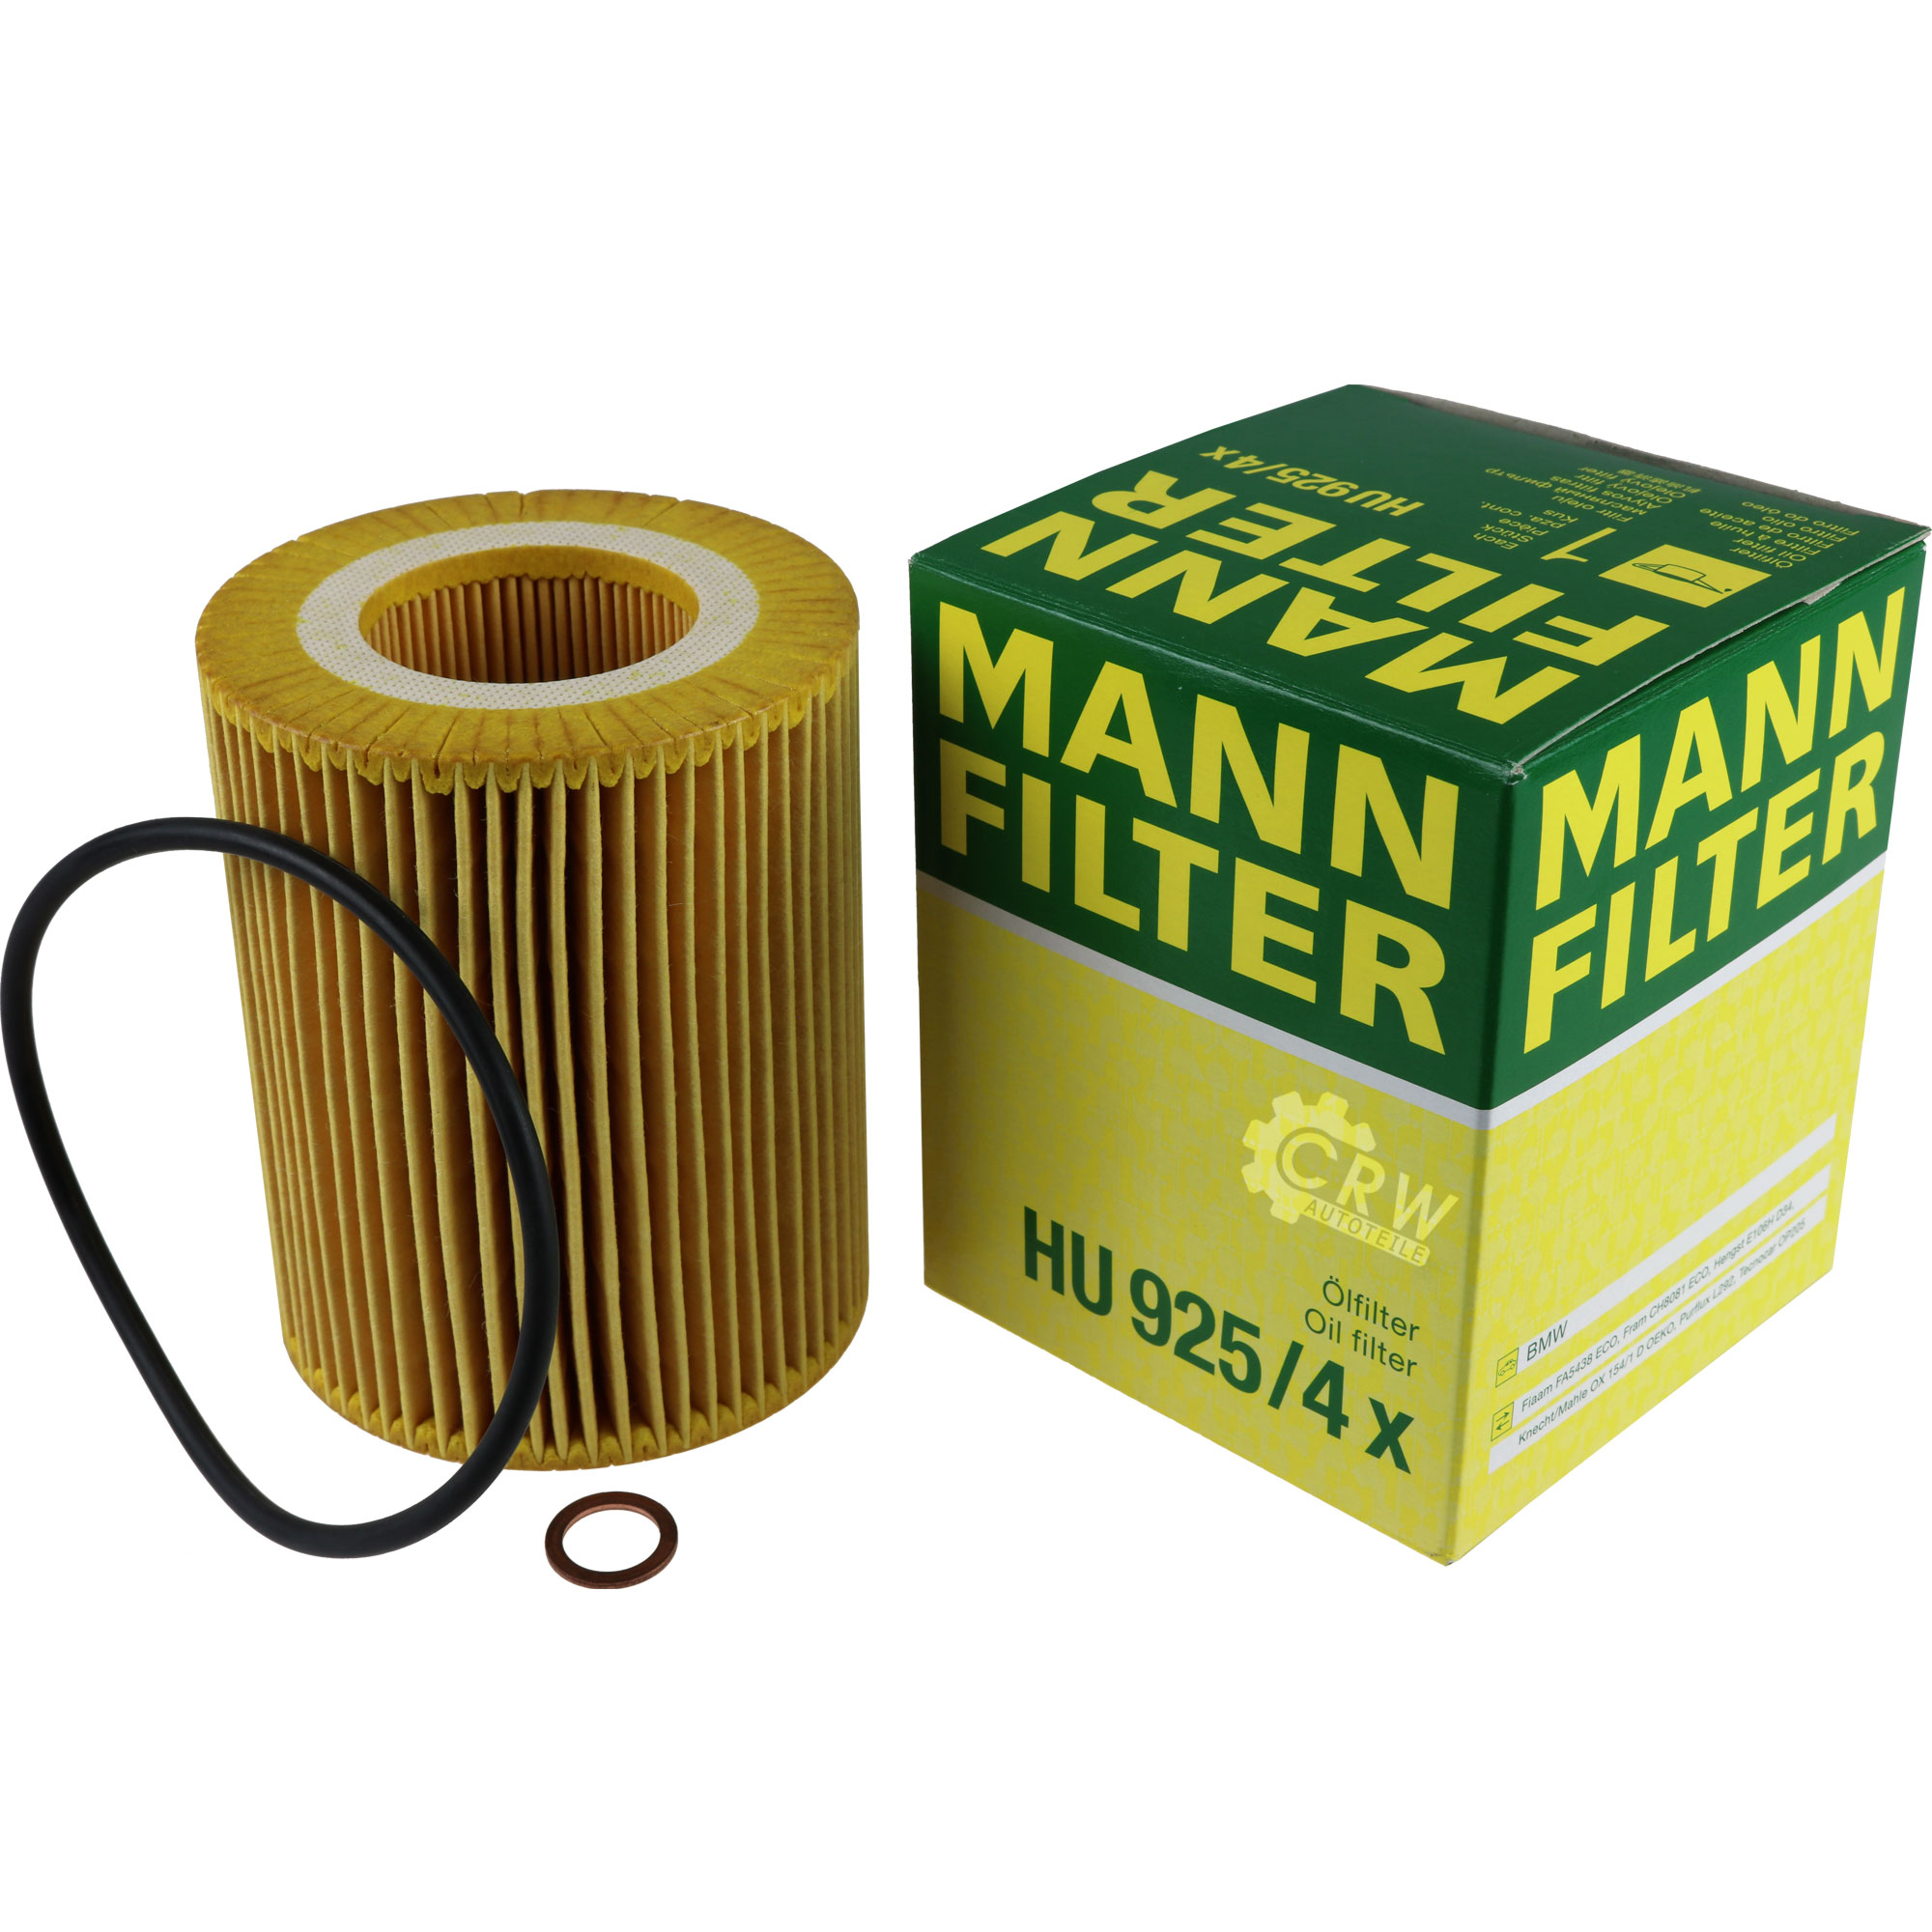 MANN-FILTER Ölfilter HU 925/4 x Oil Filter